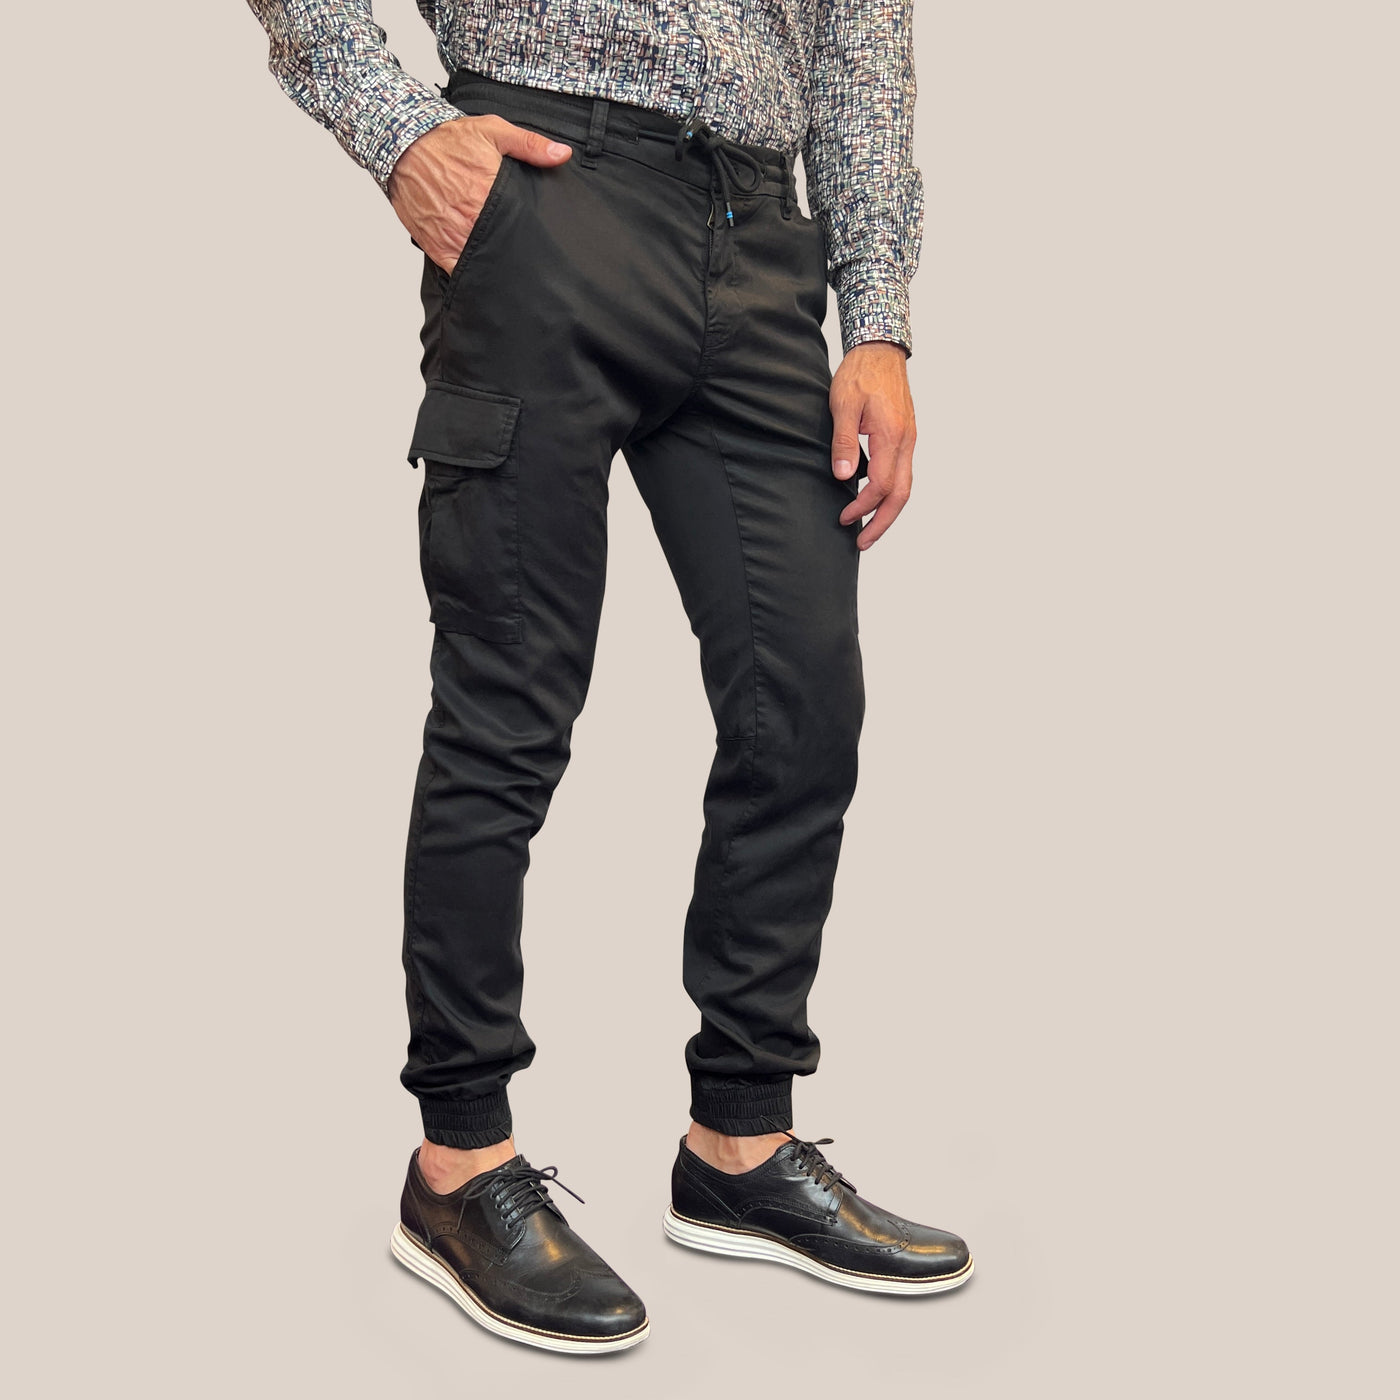 Gotstyle Fashion - Mason's Pants Extra Slim Drawstring Cargo Pant - Black